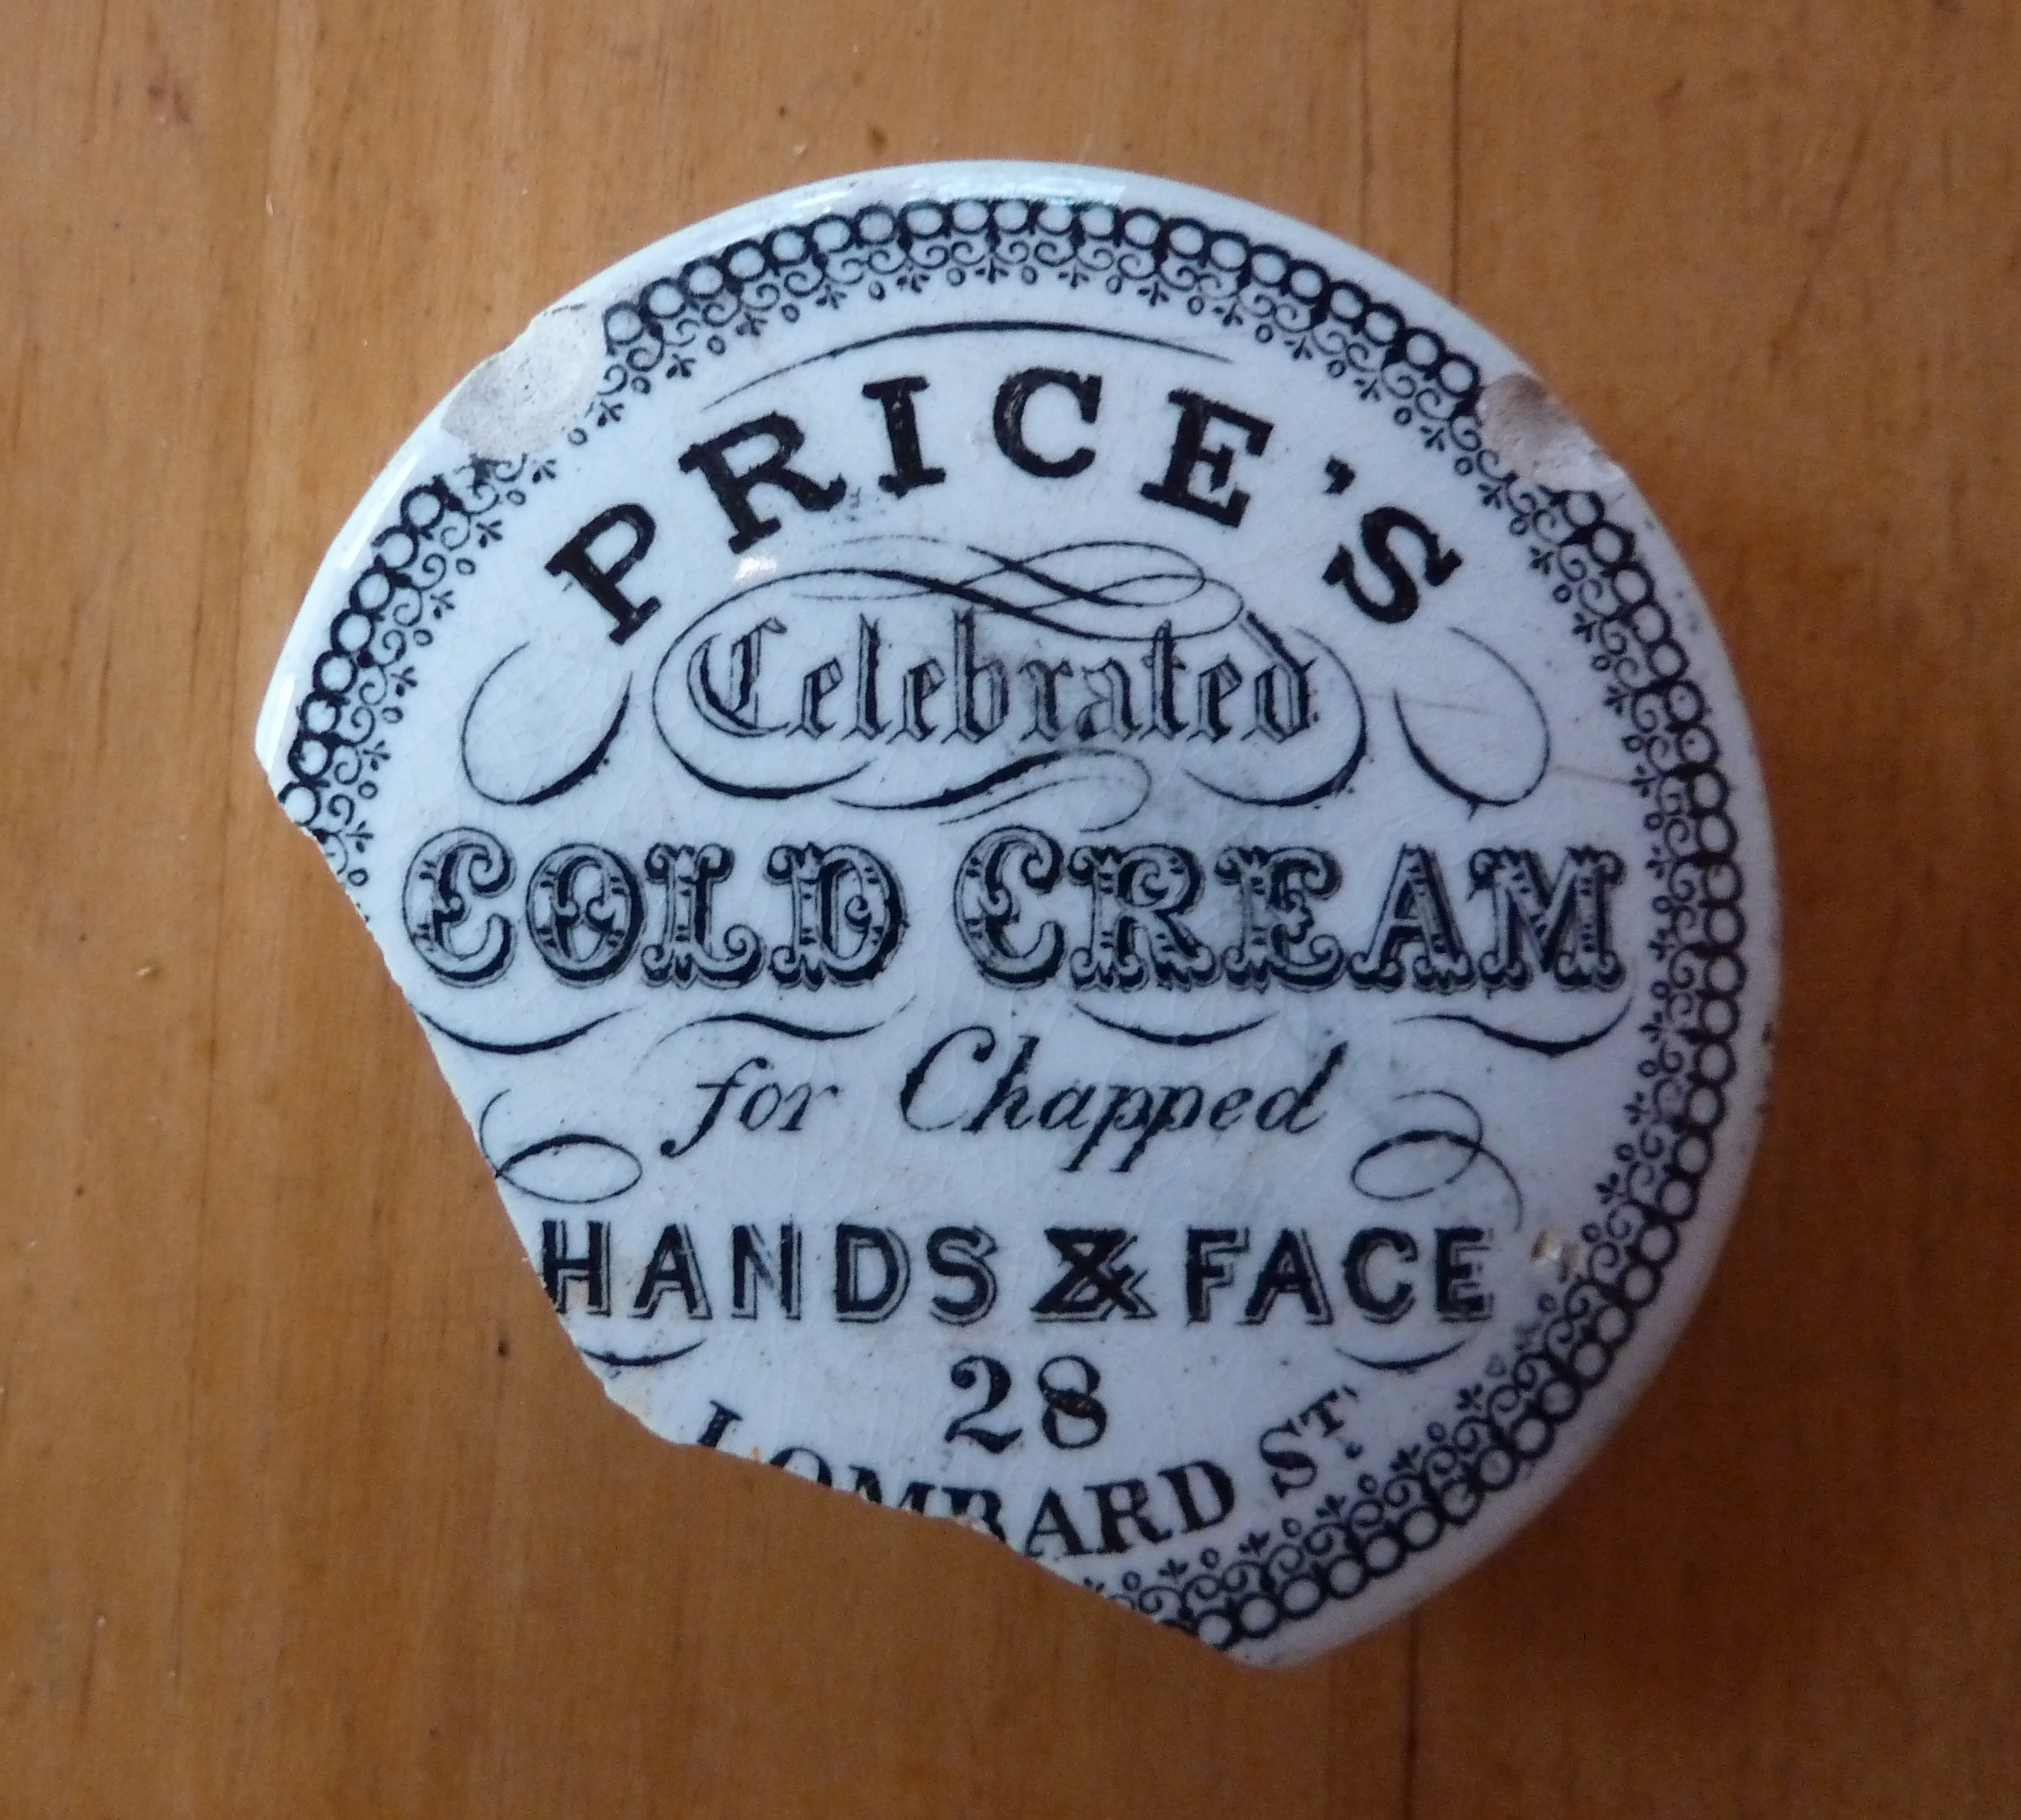 Cold Cream pot lid